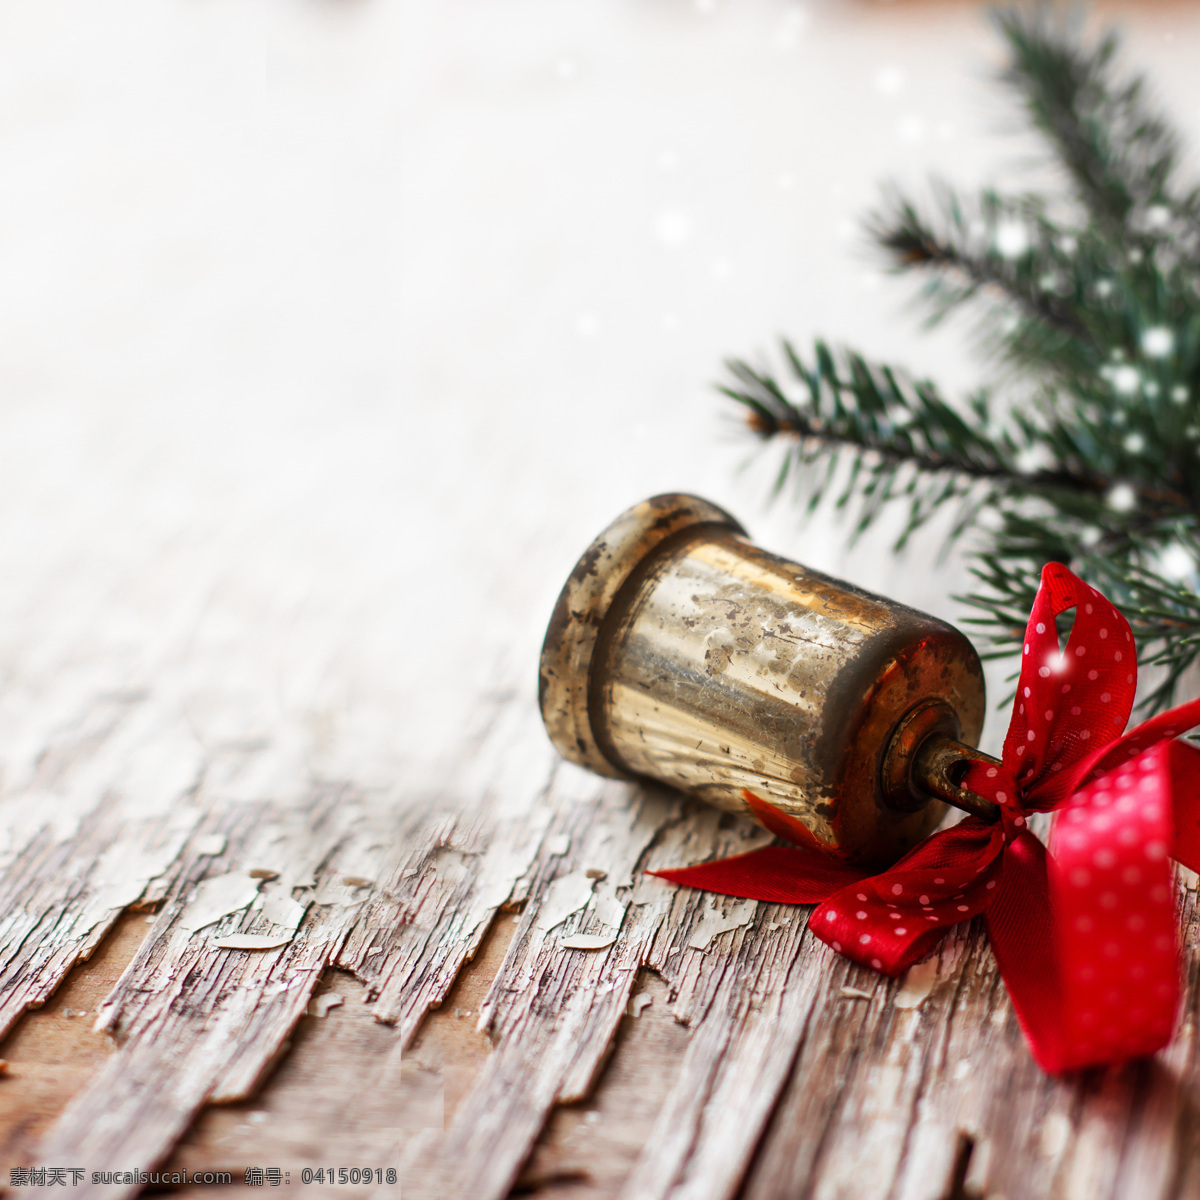 木板 上 铃铛 复古 圣诞树 背景 圣诞节 节日庆典 生活百科